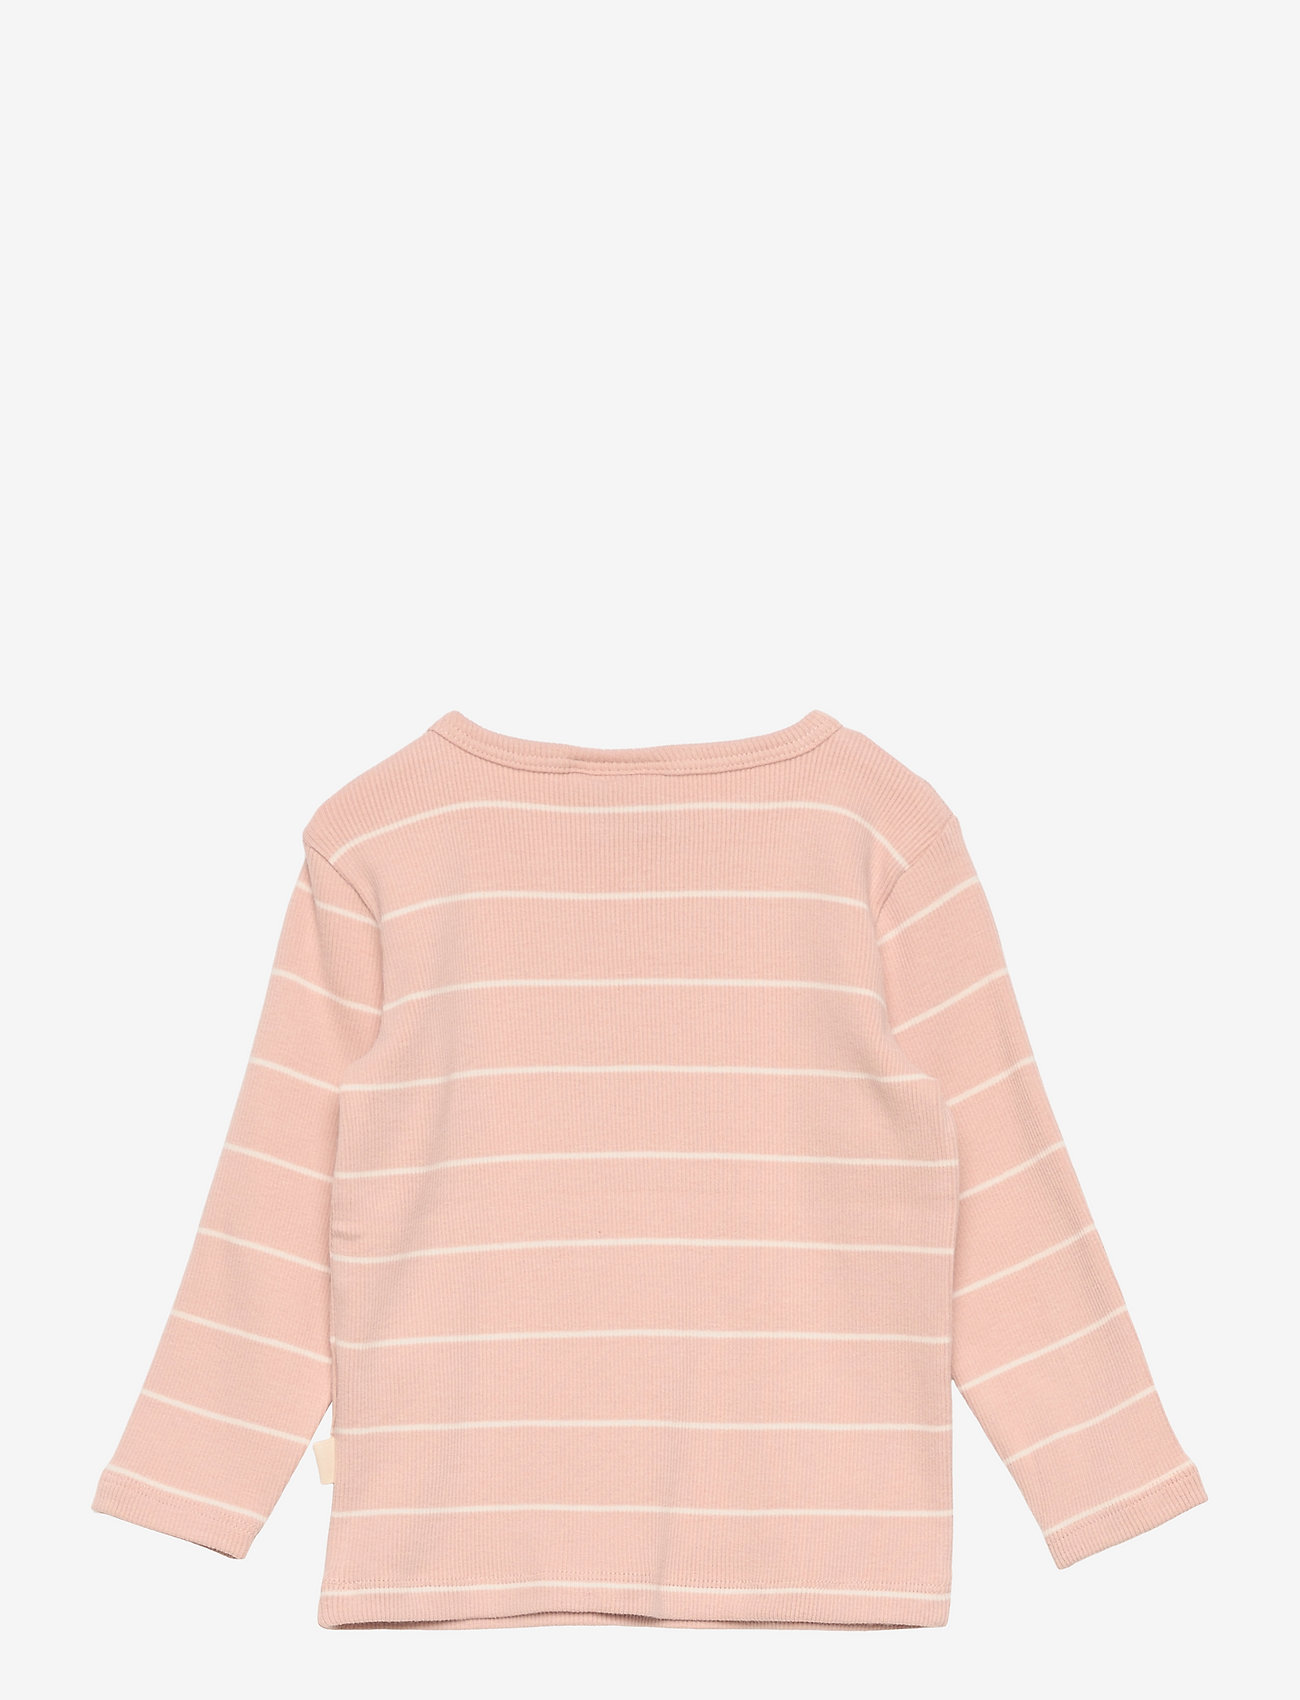 Sofie Schnoor Baby and Kids - T-shirt long-sleeve - pitkähihaiset t-paidat - light rose - 1